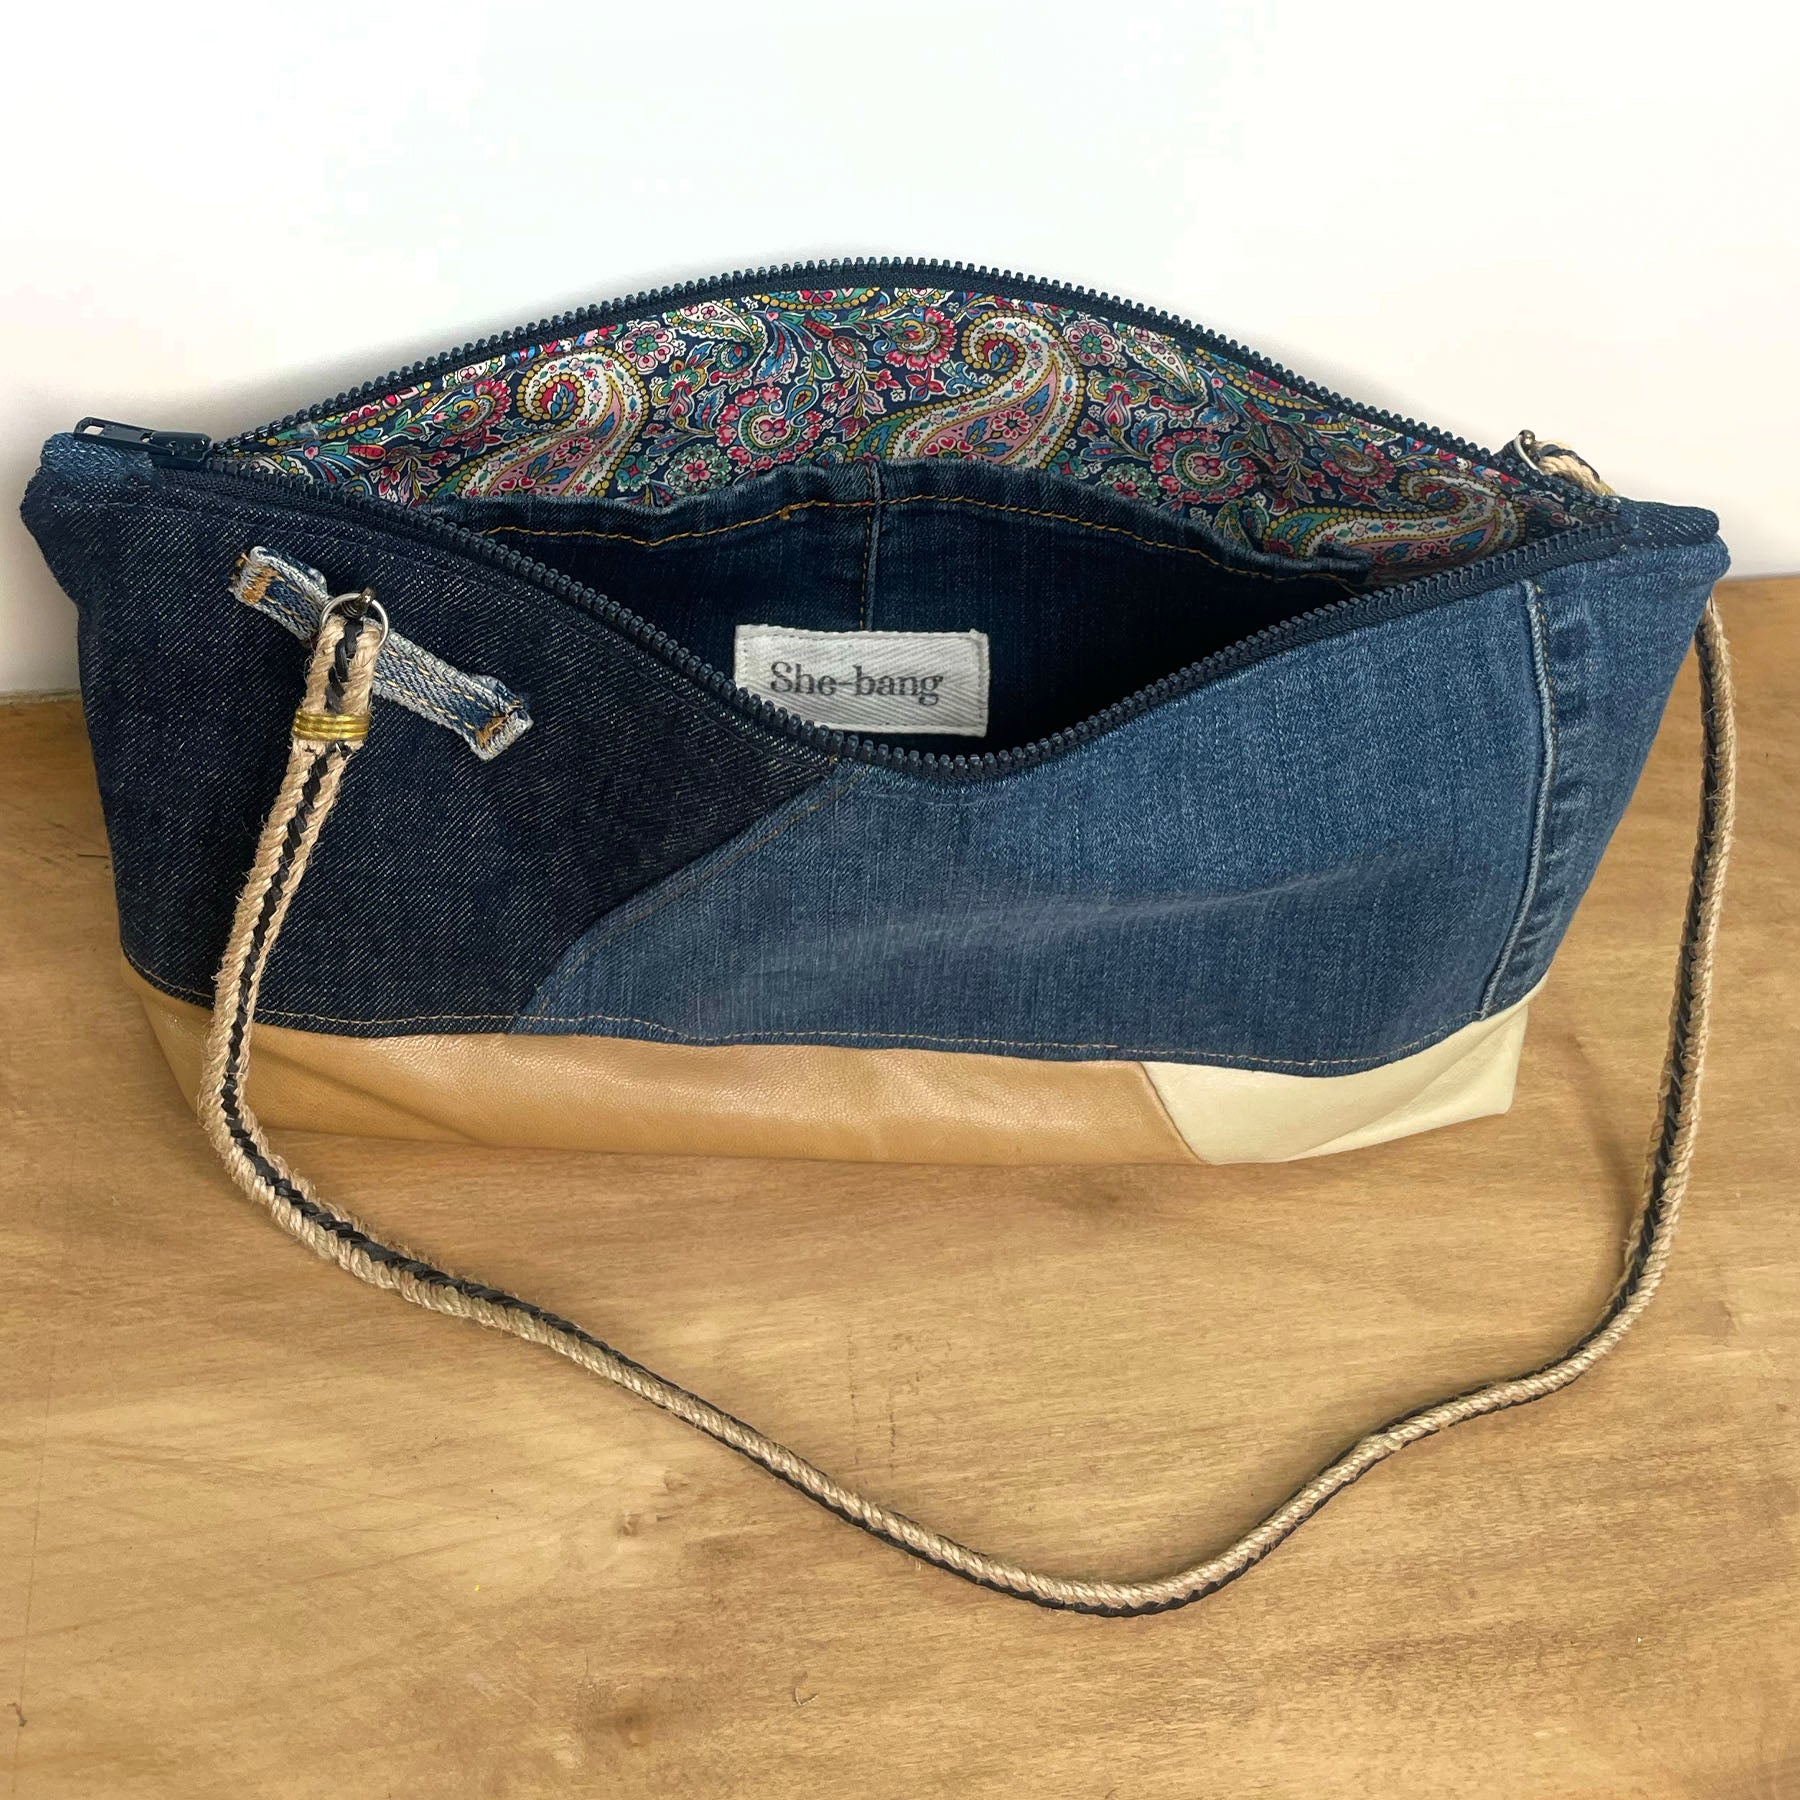 She-Bang Shop Unique Denim Handbags